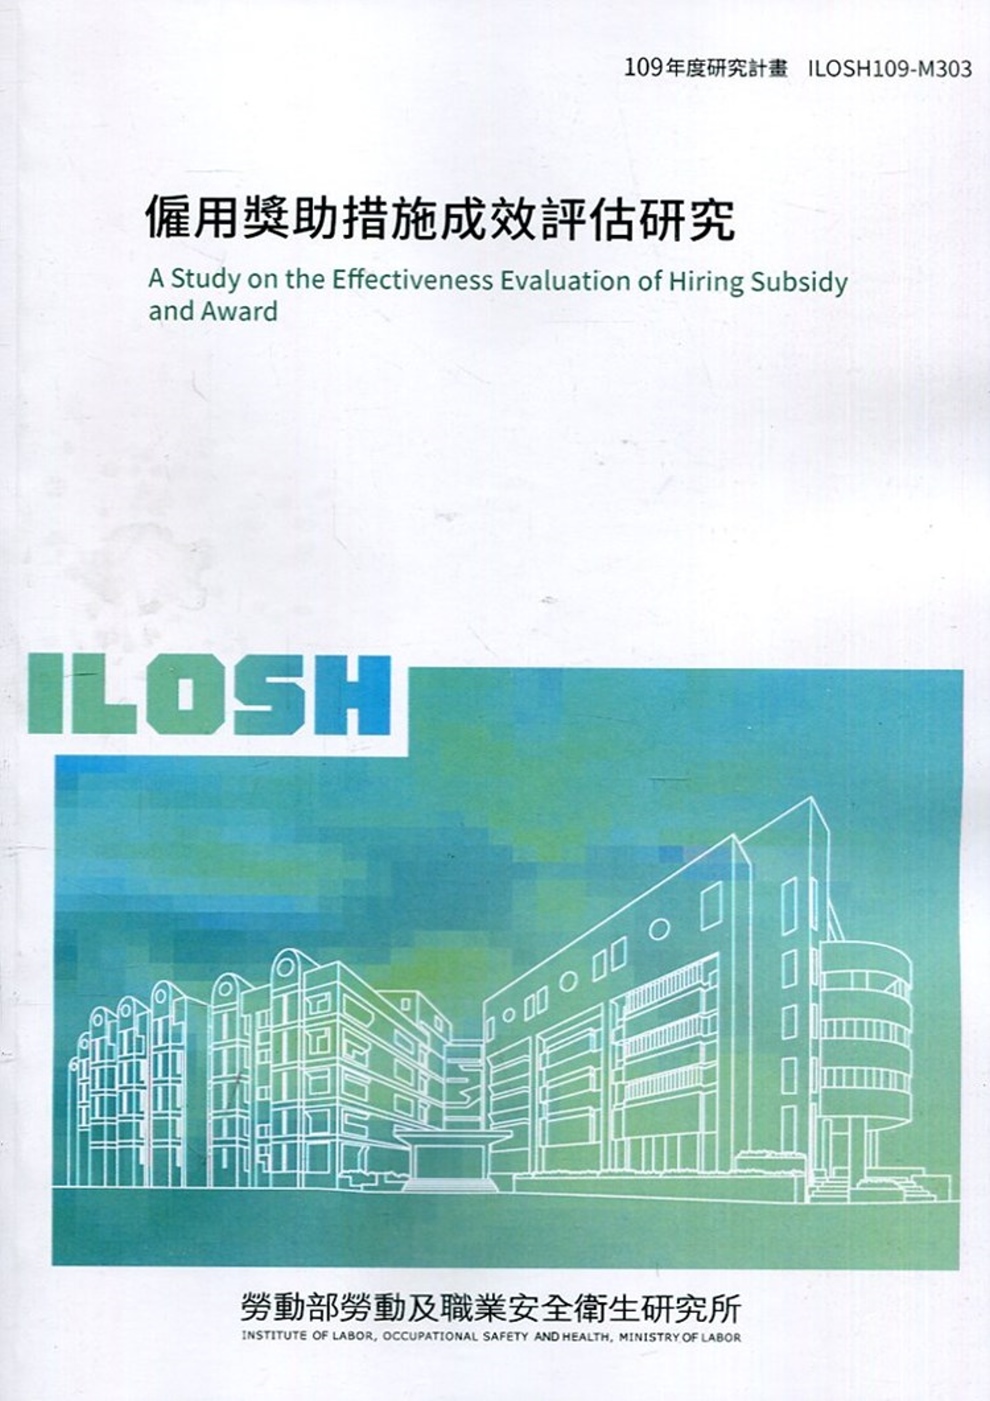 僱用獎助措施成效評估研究 ILOSH109-M303